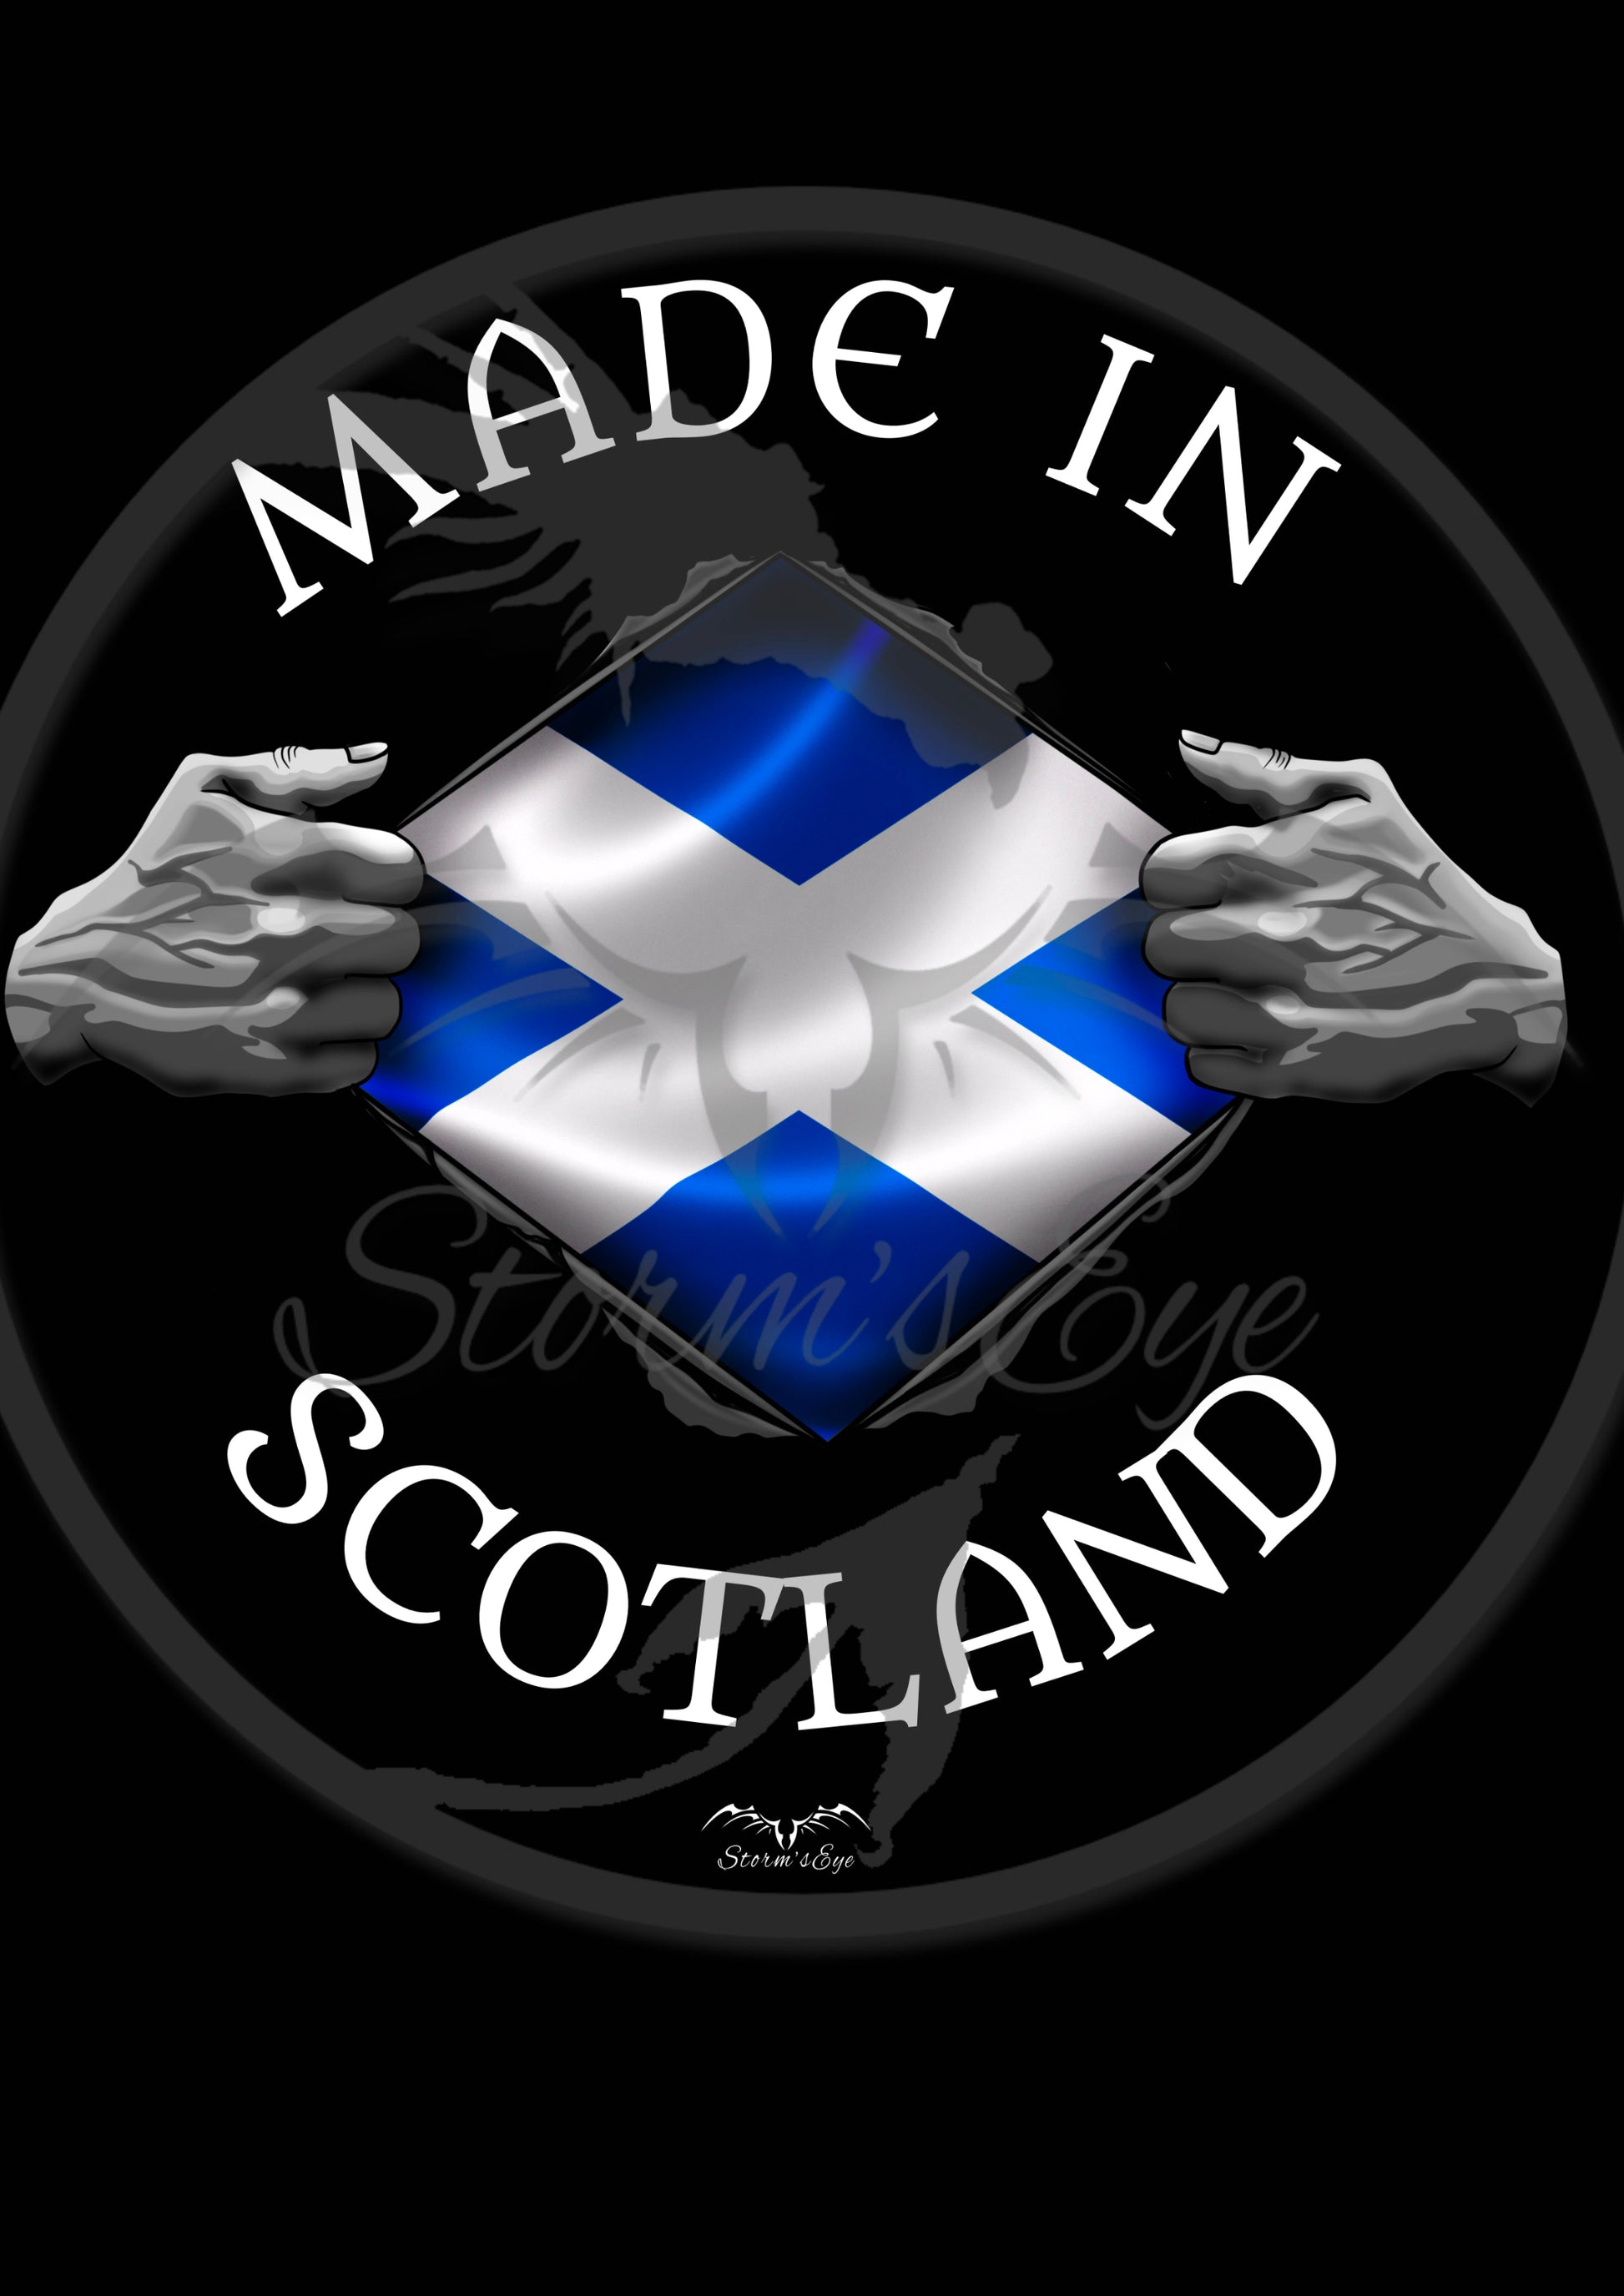 made in scotland scottish design by Stormseye Design